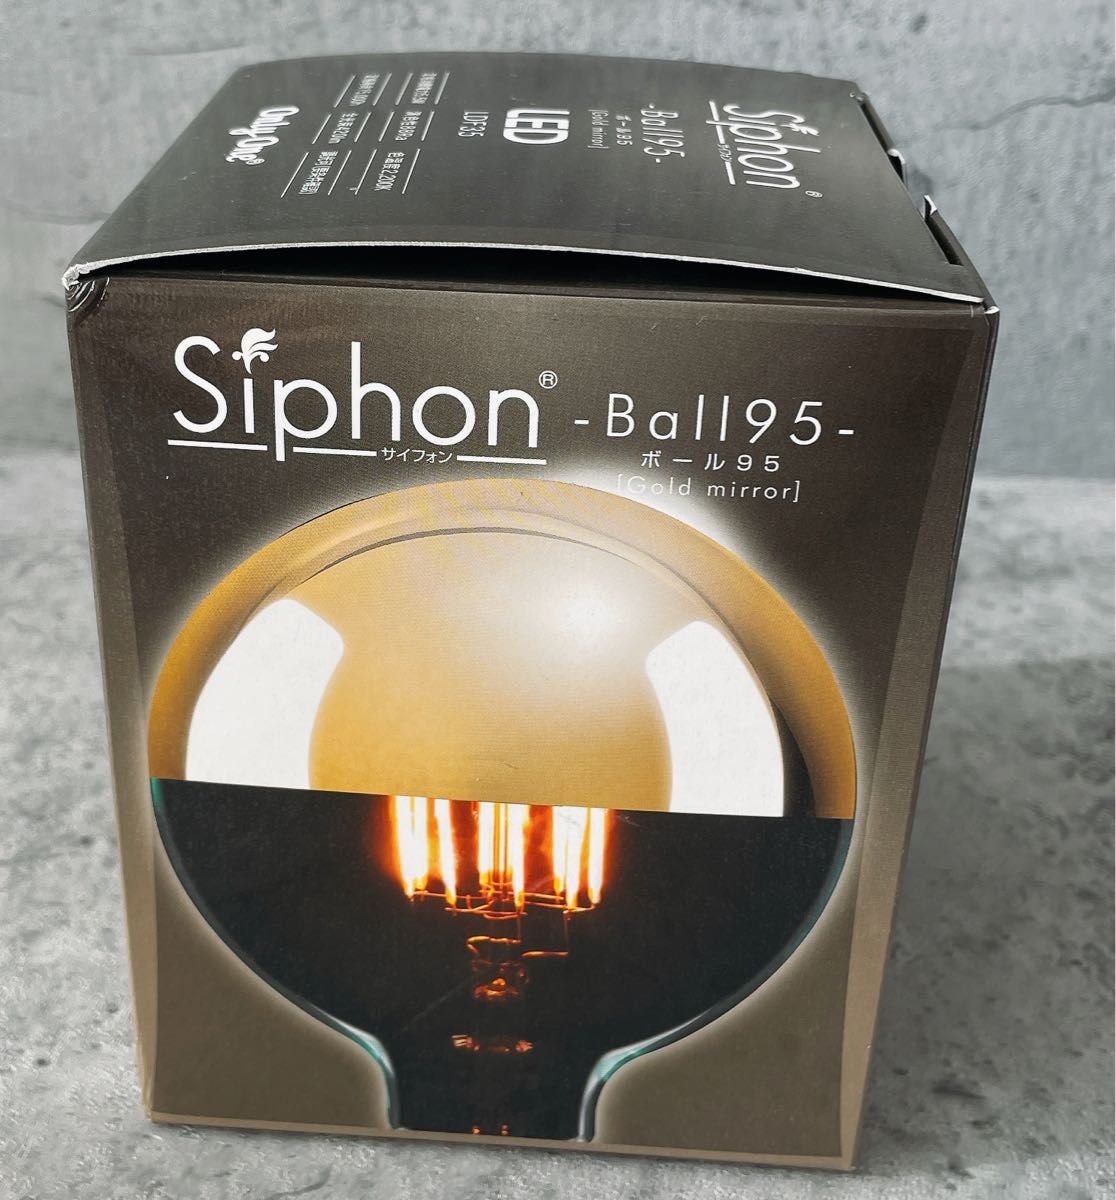 ビートソニック Siphon Ball95 Gold mirror